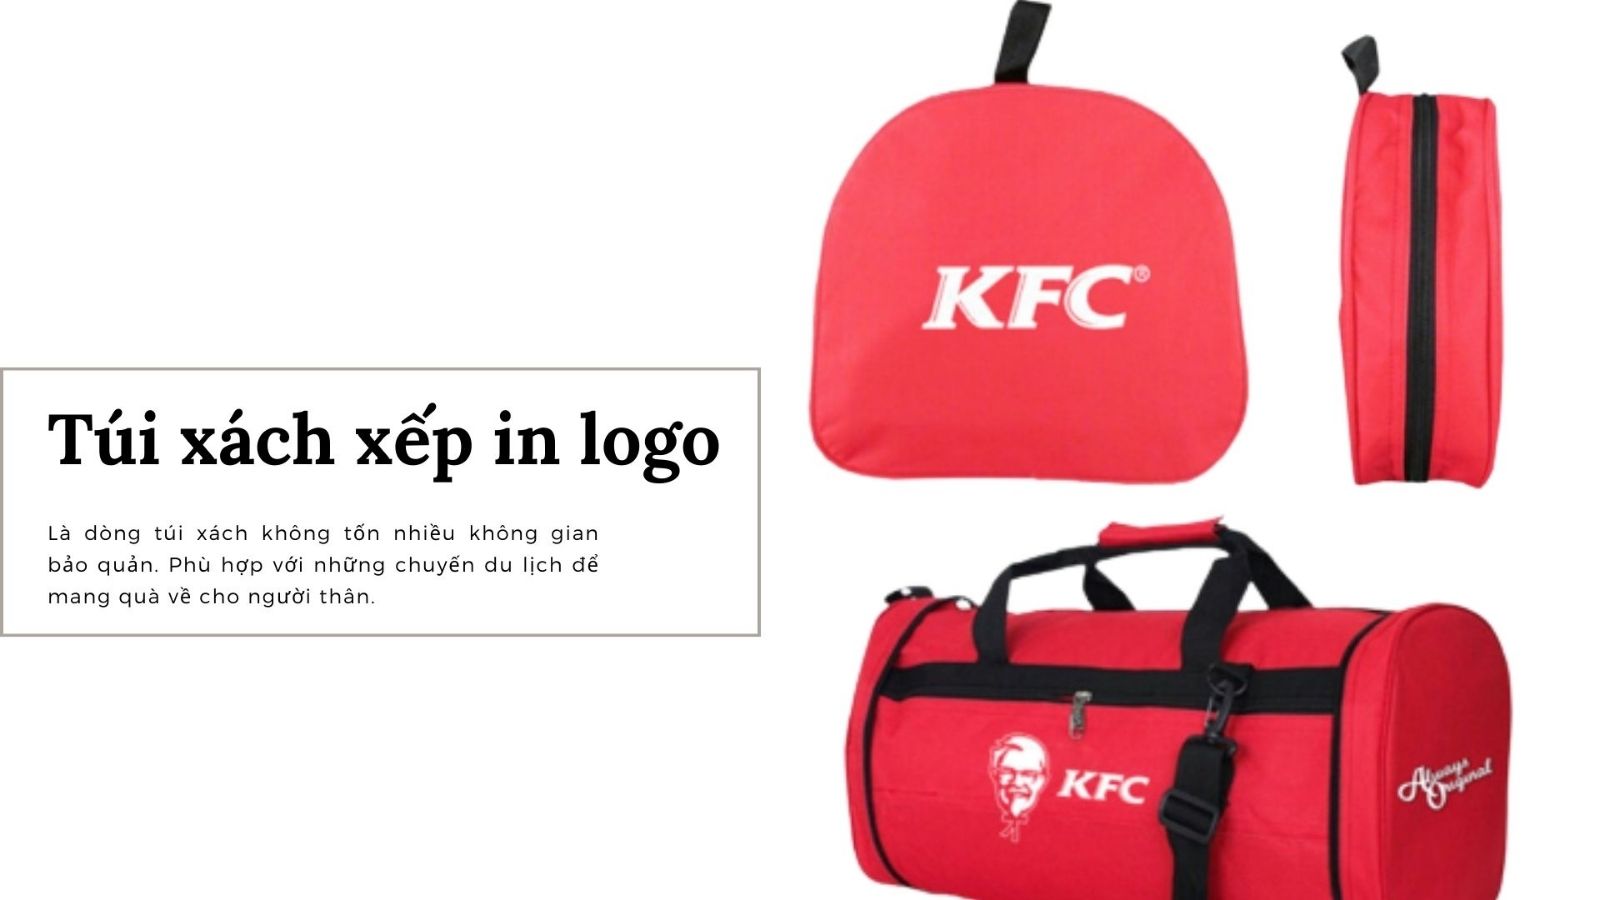 Lựa chọn thiết kế và màu sắc túi xách xếp in logo ấn tượng